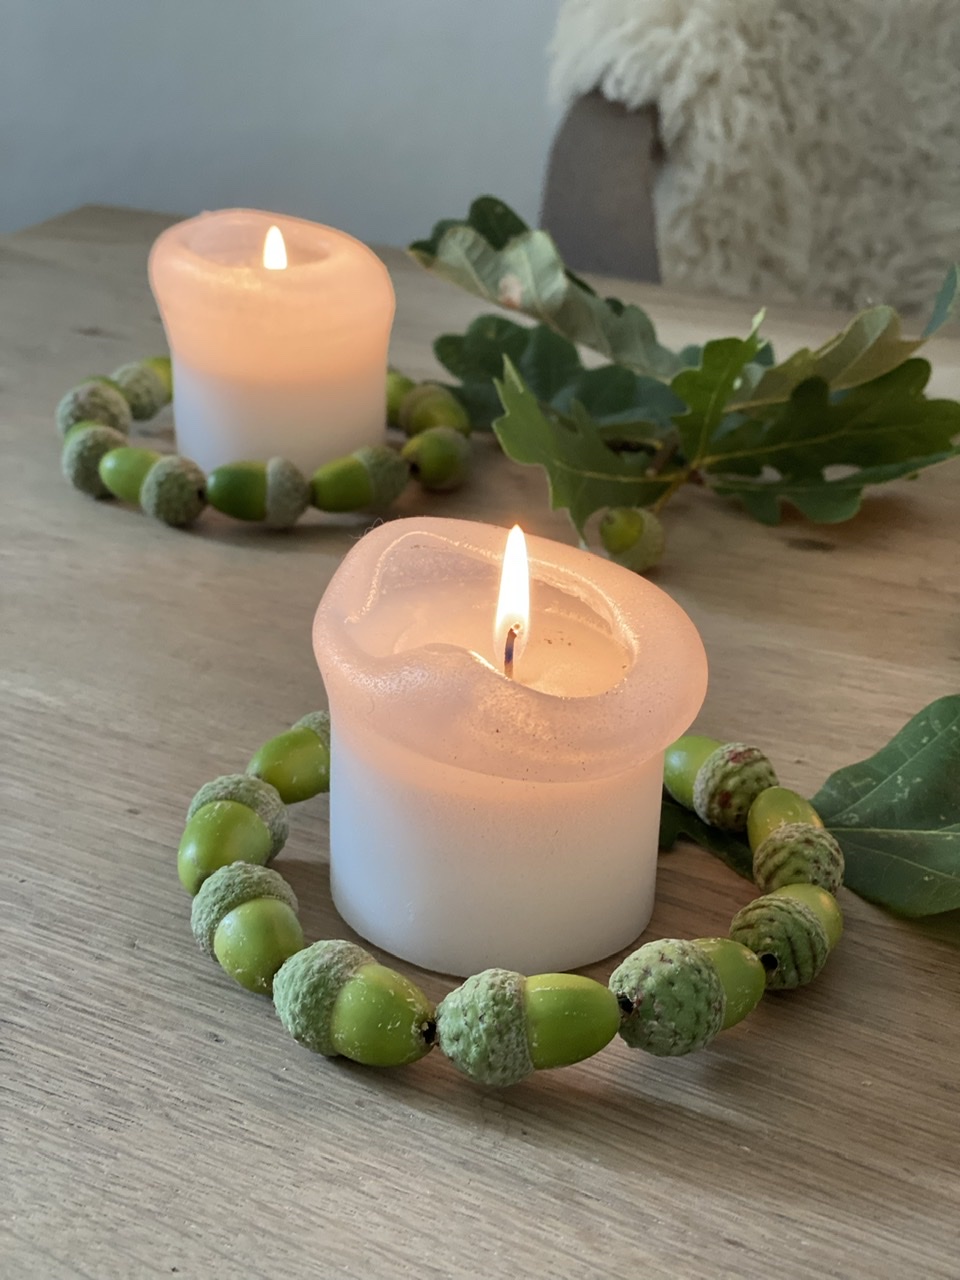 Basteln mit grünen Eicheln Idee 3: Drei Kränze aus "hintereinander liegenden" grünen Eicheln um drei Kerzen